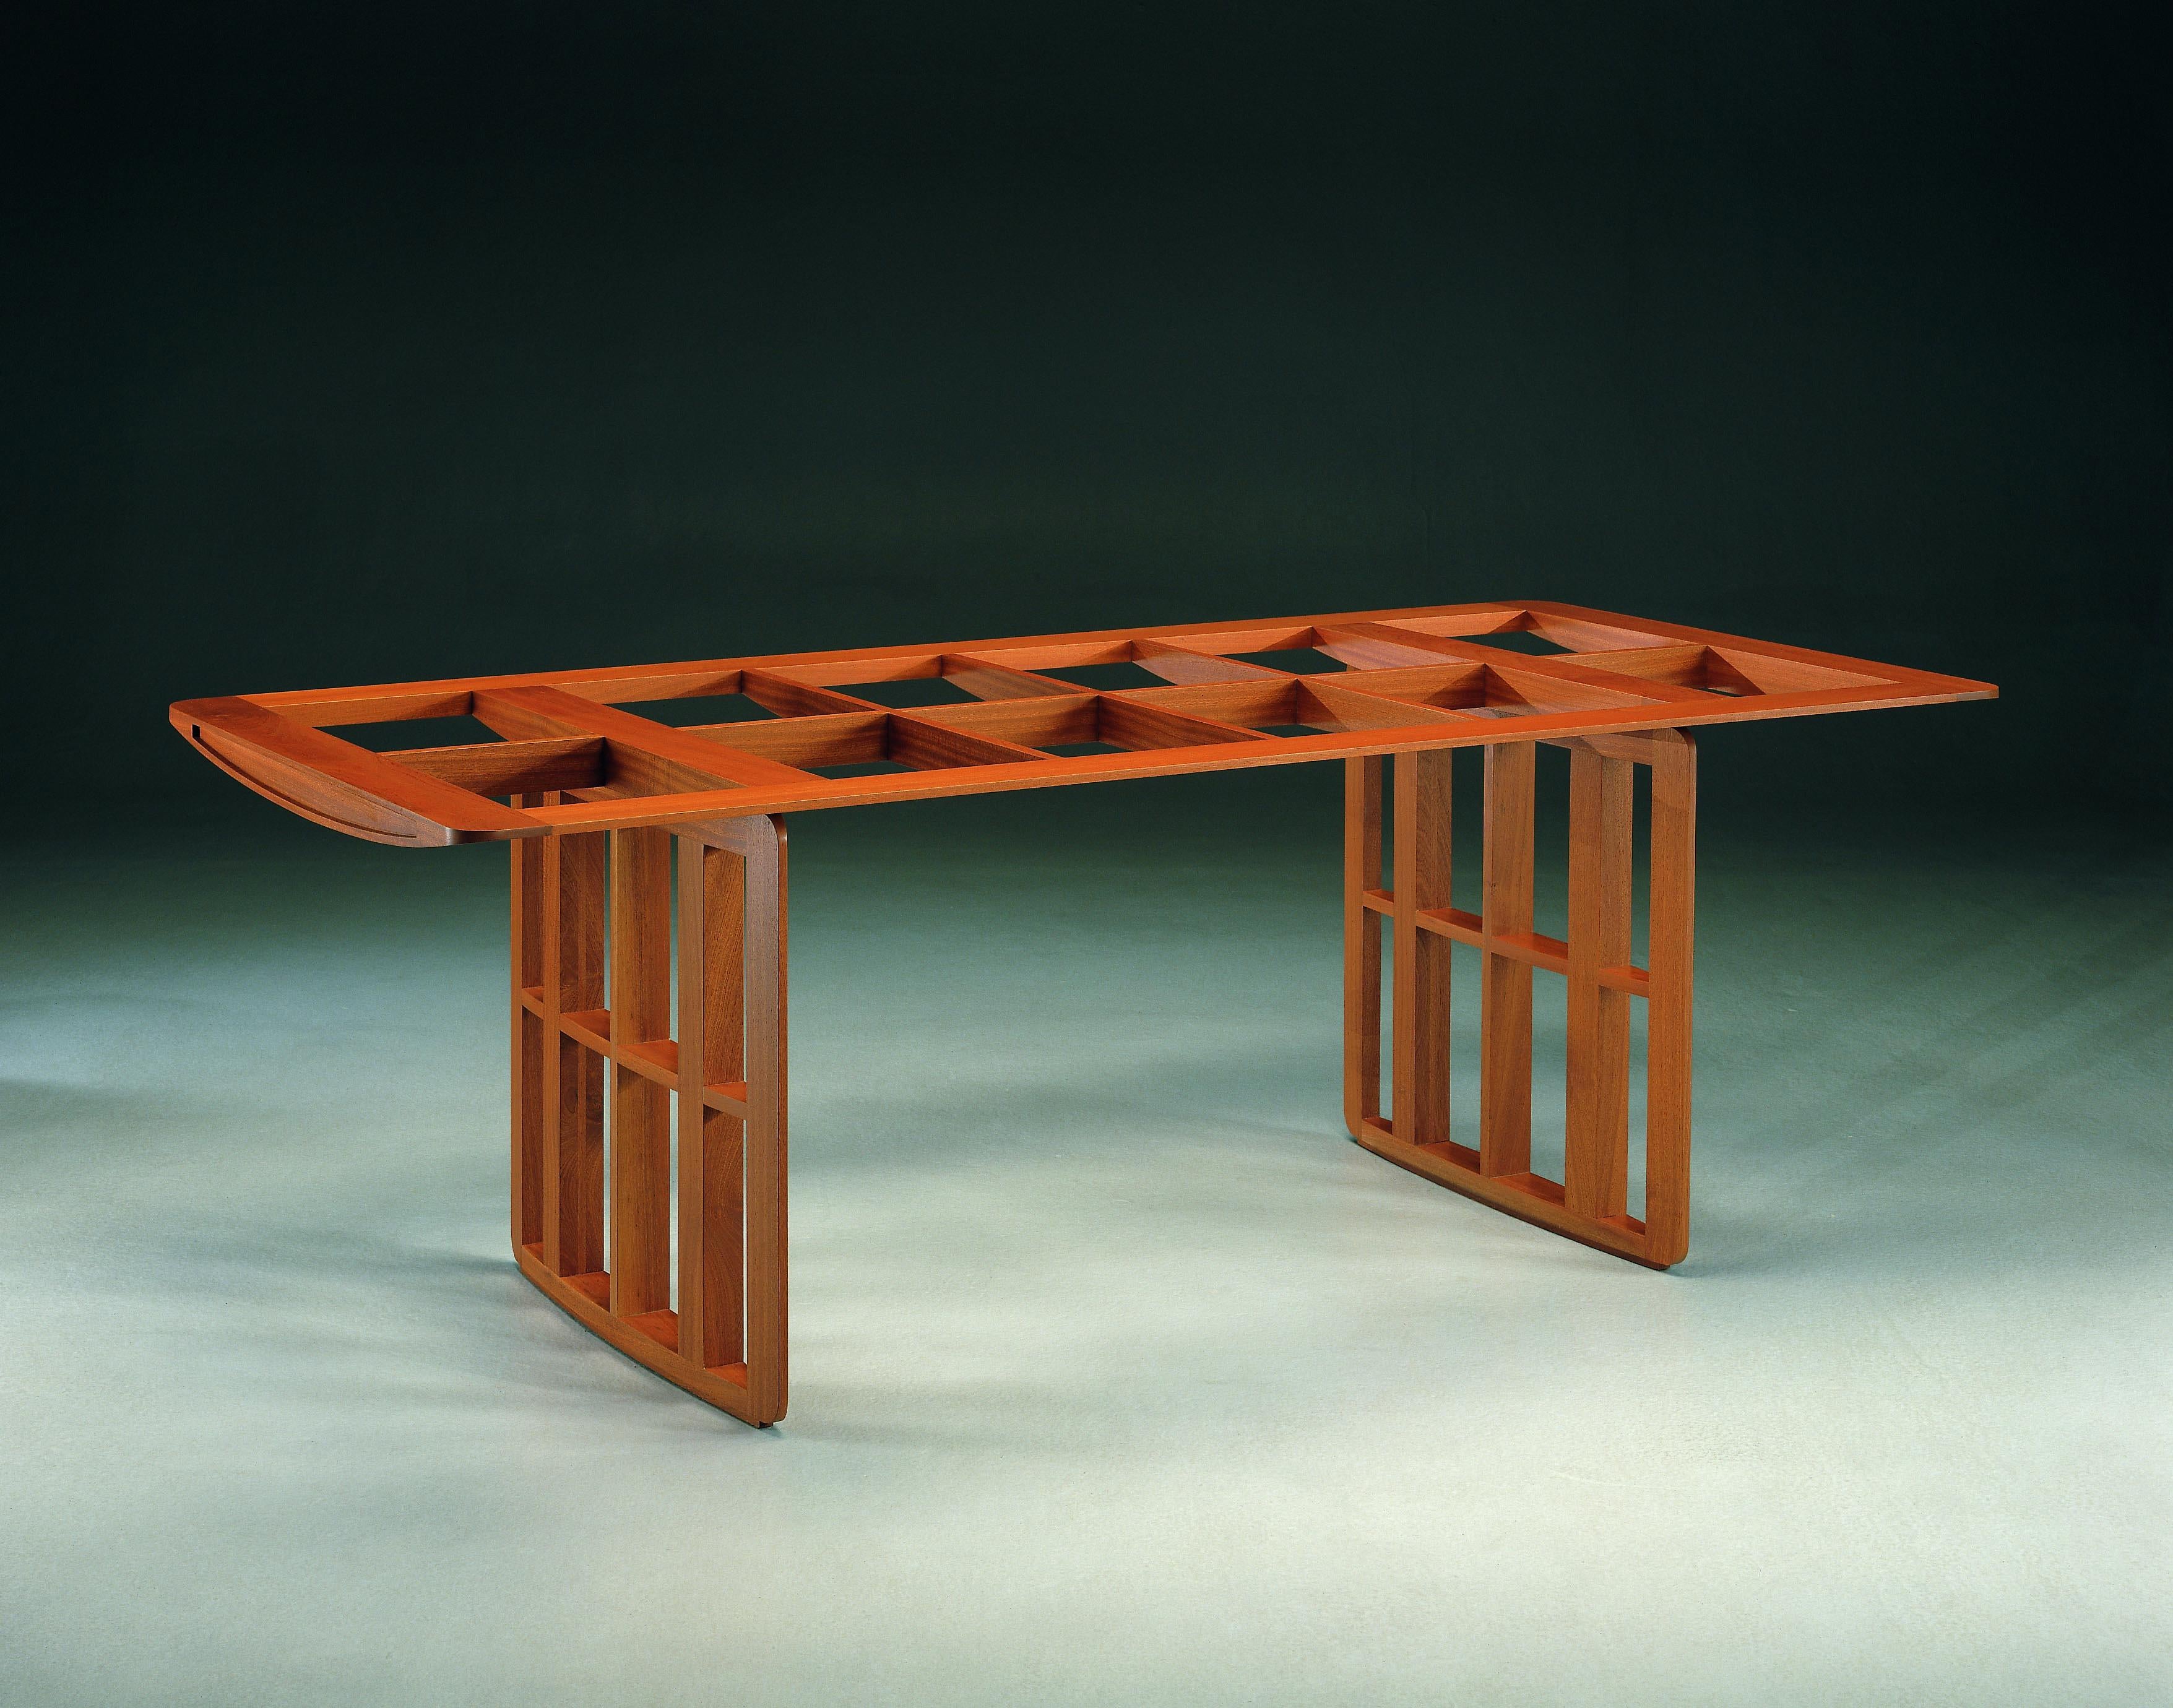 Aero, Contemporary Table or Desk in Maple Wood, Design Franco Poli 2